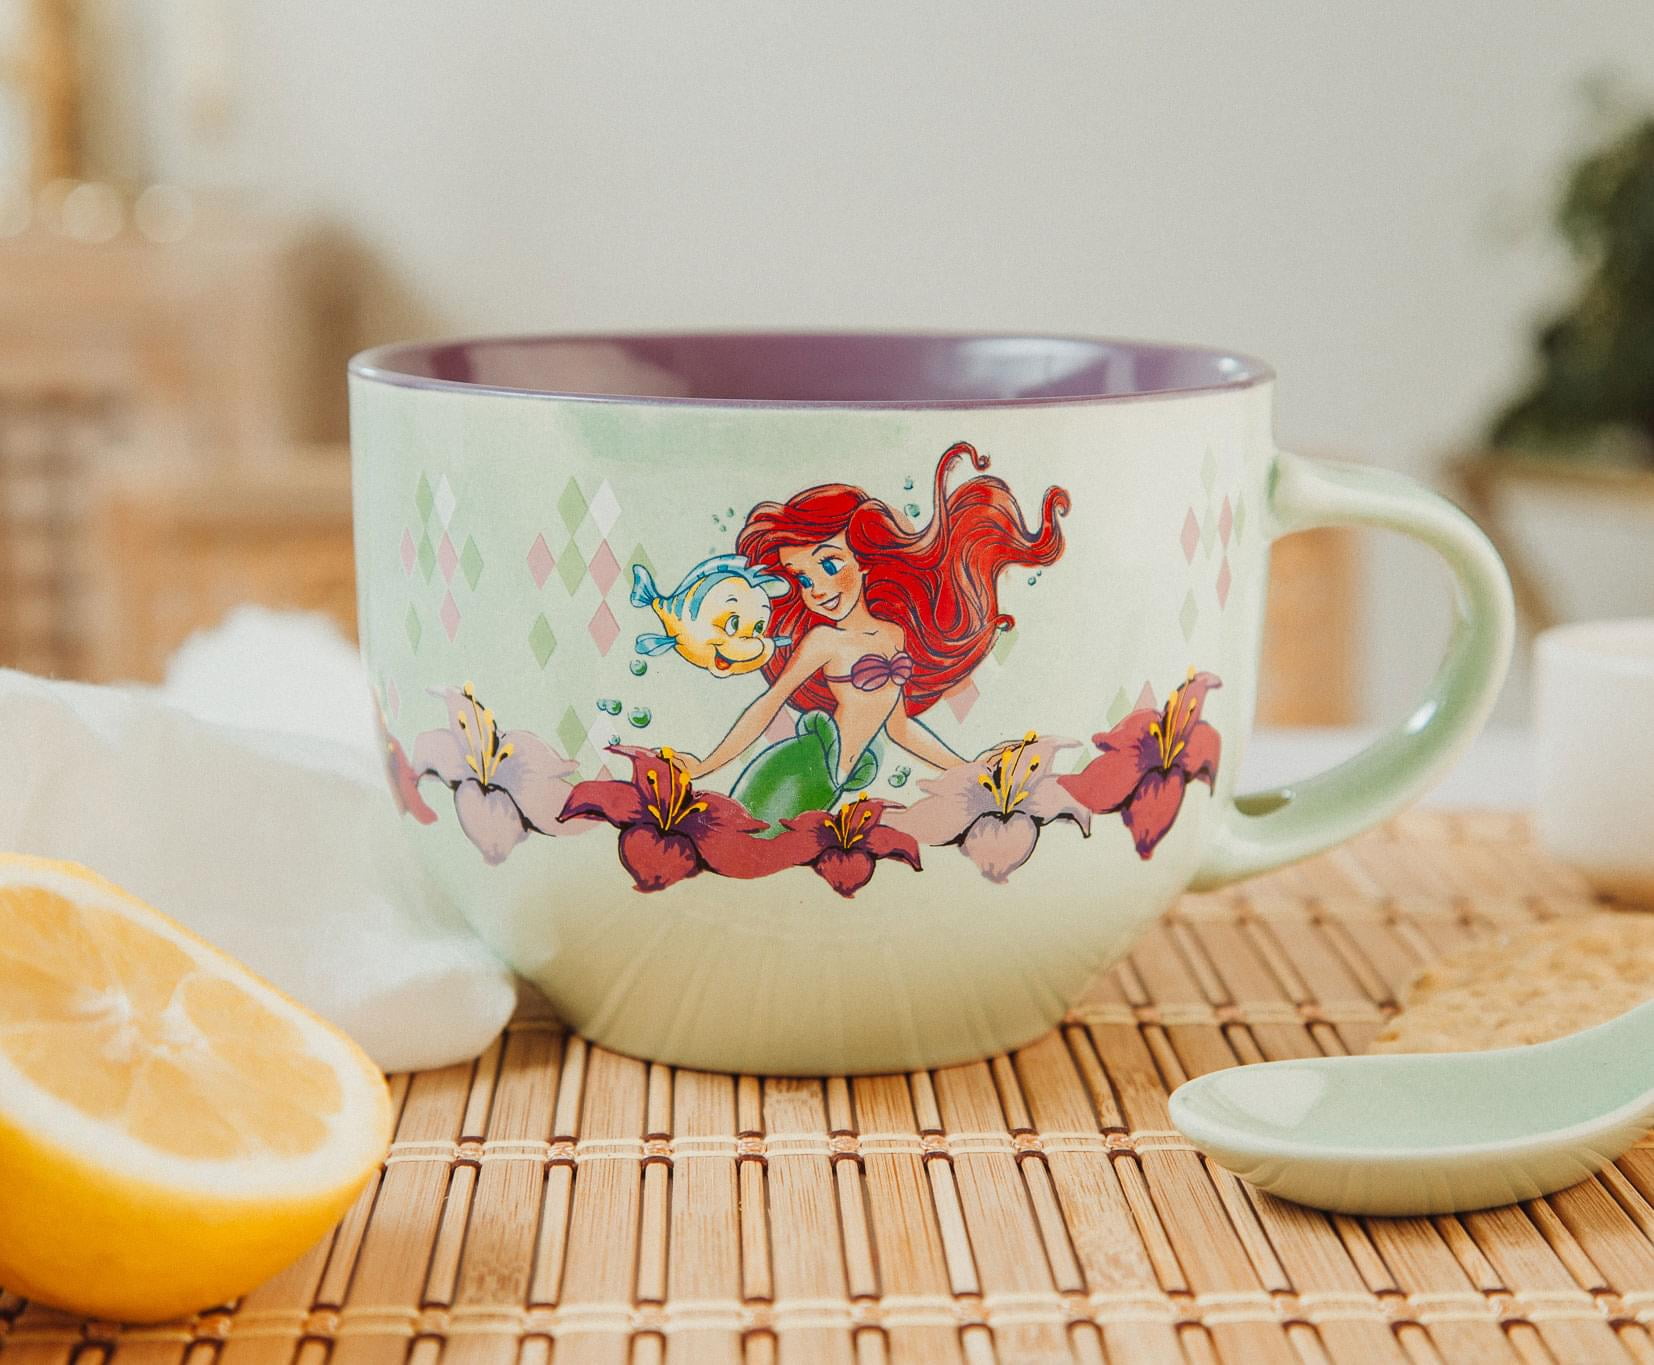 Disney Ariel Pearlized Mug (11 oz)